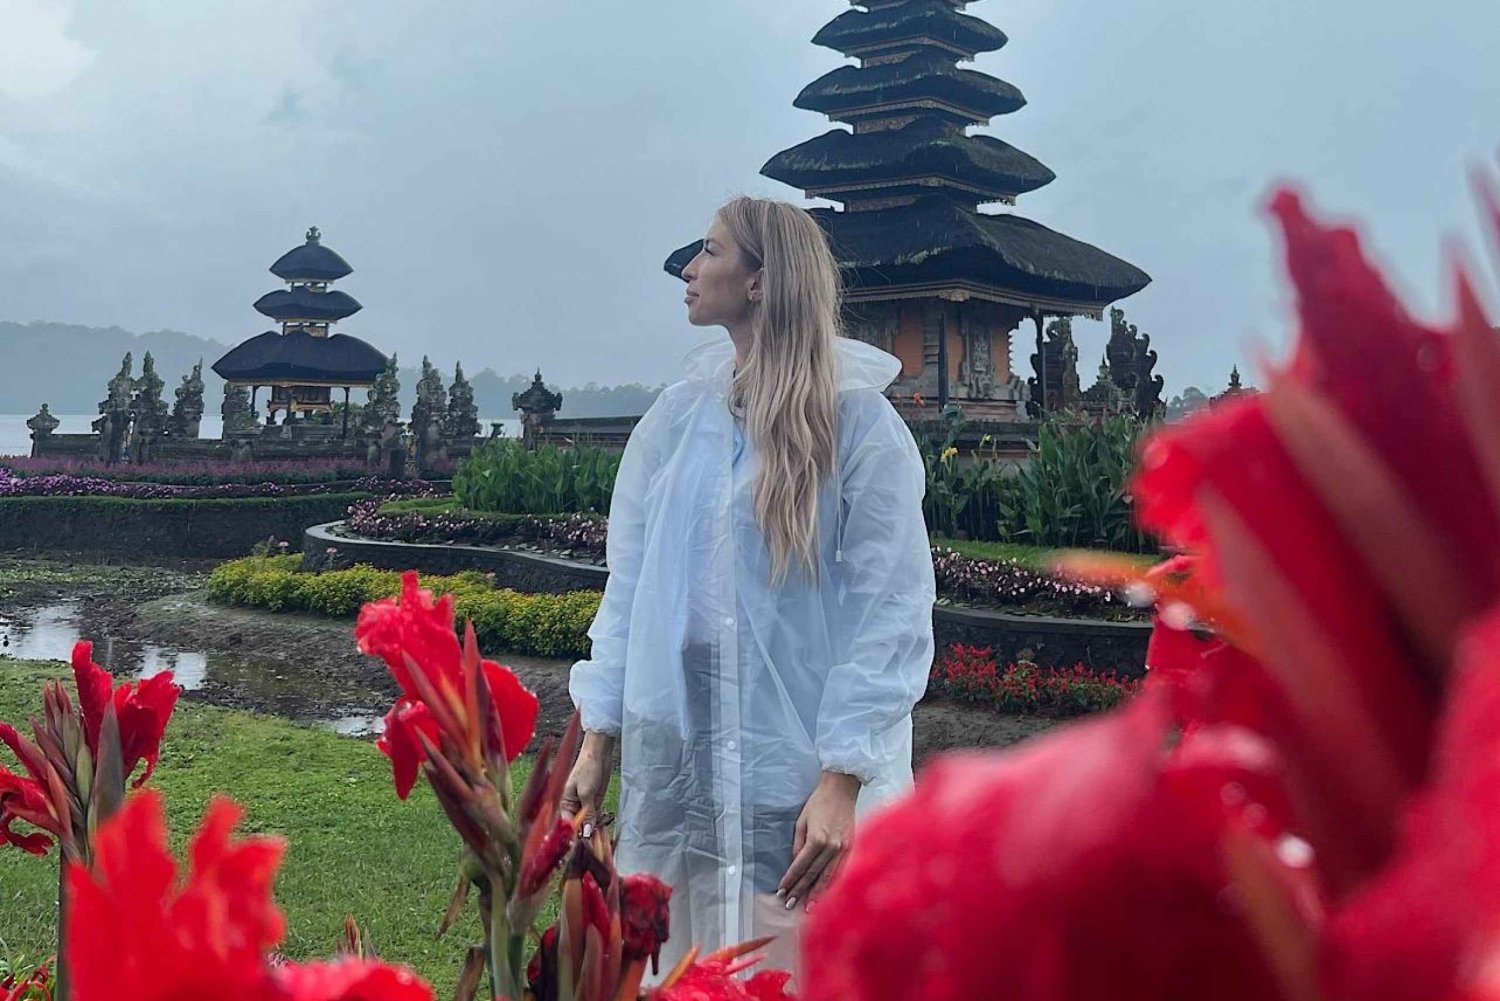 Noord-Bali: Prachtige dagvullende tour naar het beroemde noorden van Bali